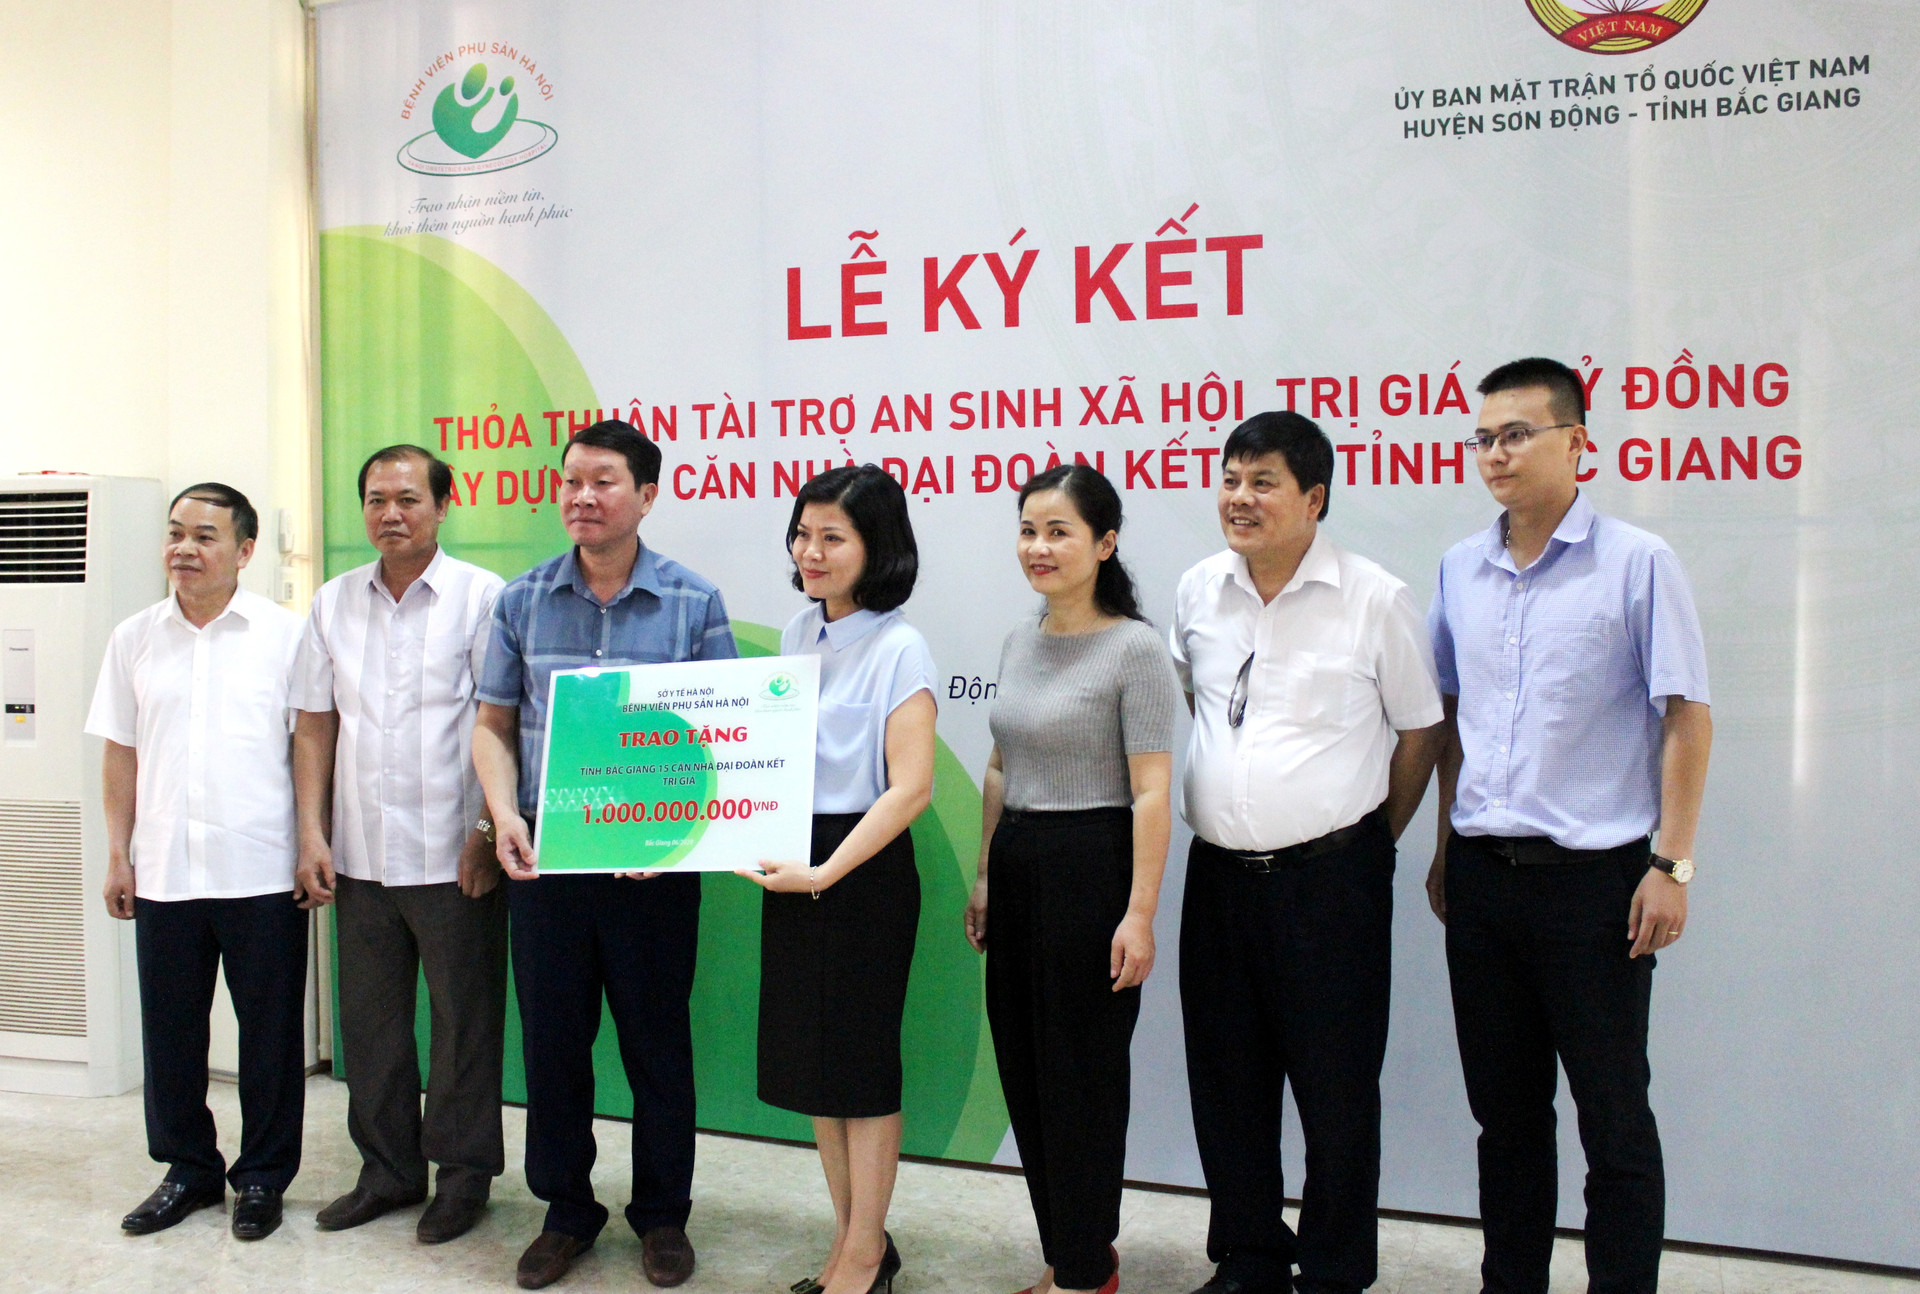 Ảnh: Đại diện lãnh đạo Bệnh viện Phụ sản Hà Nội trao biểu trưng tài trợ 1 tỷ đồng xây dựng nhà Đại đoàn kết.